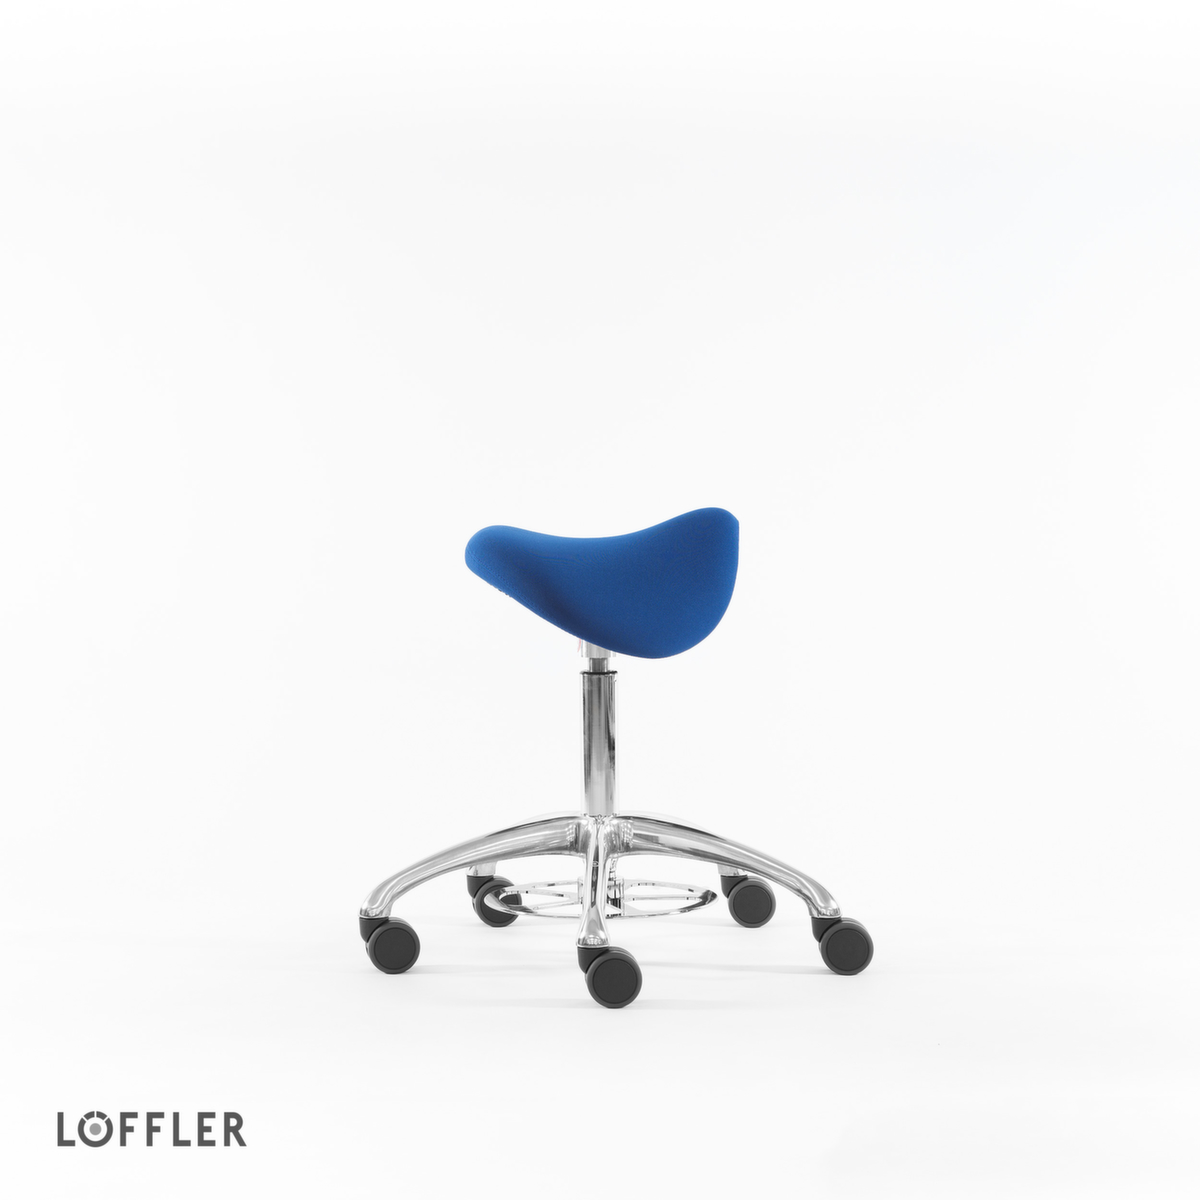 Löffler Sattelsitzhocker Sedlo mit Fußauslösung, Sitz blau, Rollen Standard 2 ZOOM